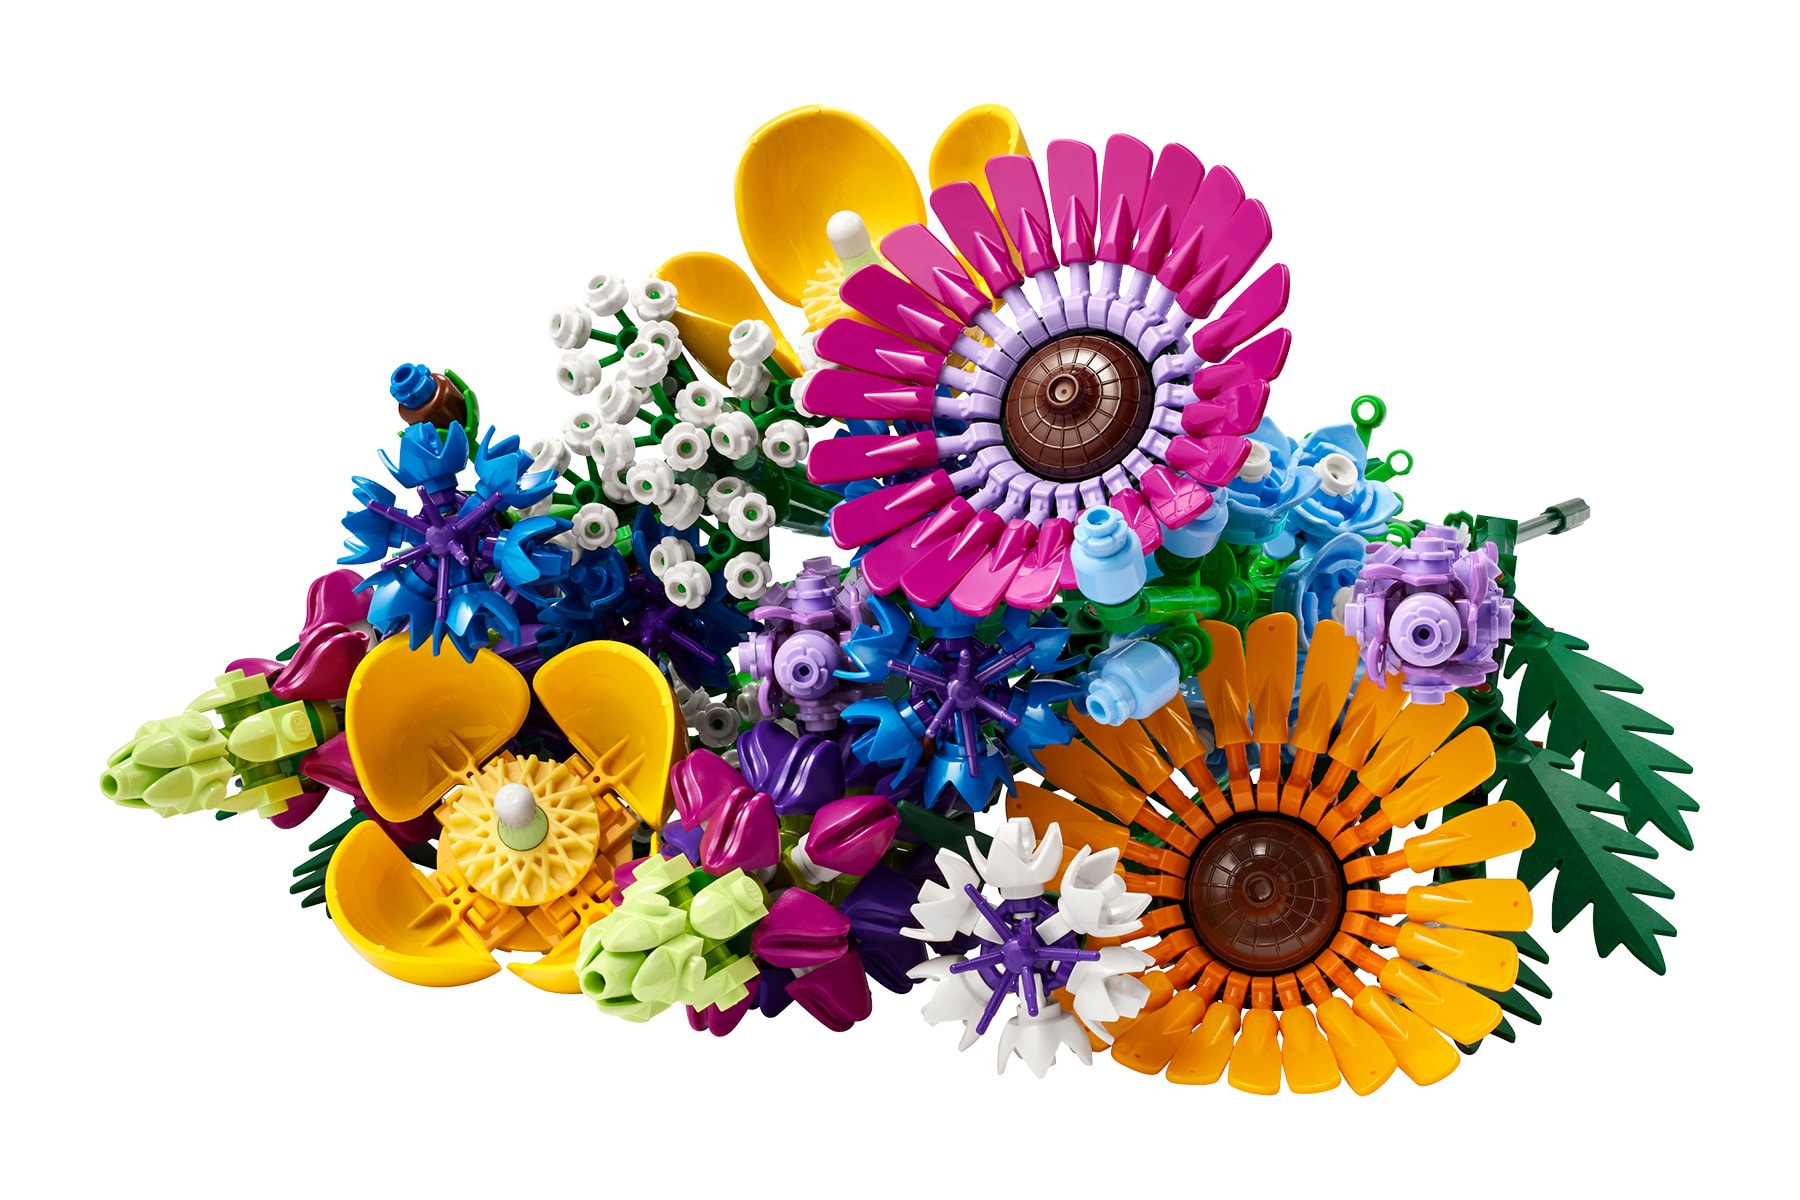 LEGO 花藝系列「乾燥花」、「野花花束」全新積木模型即將發售